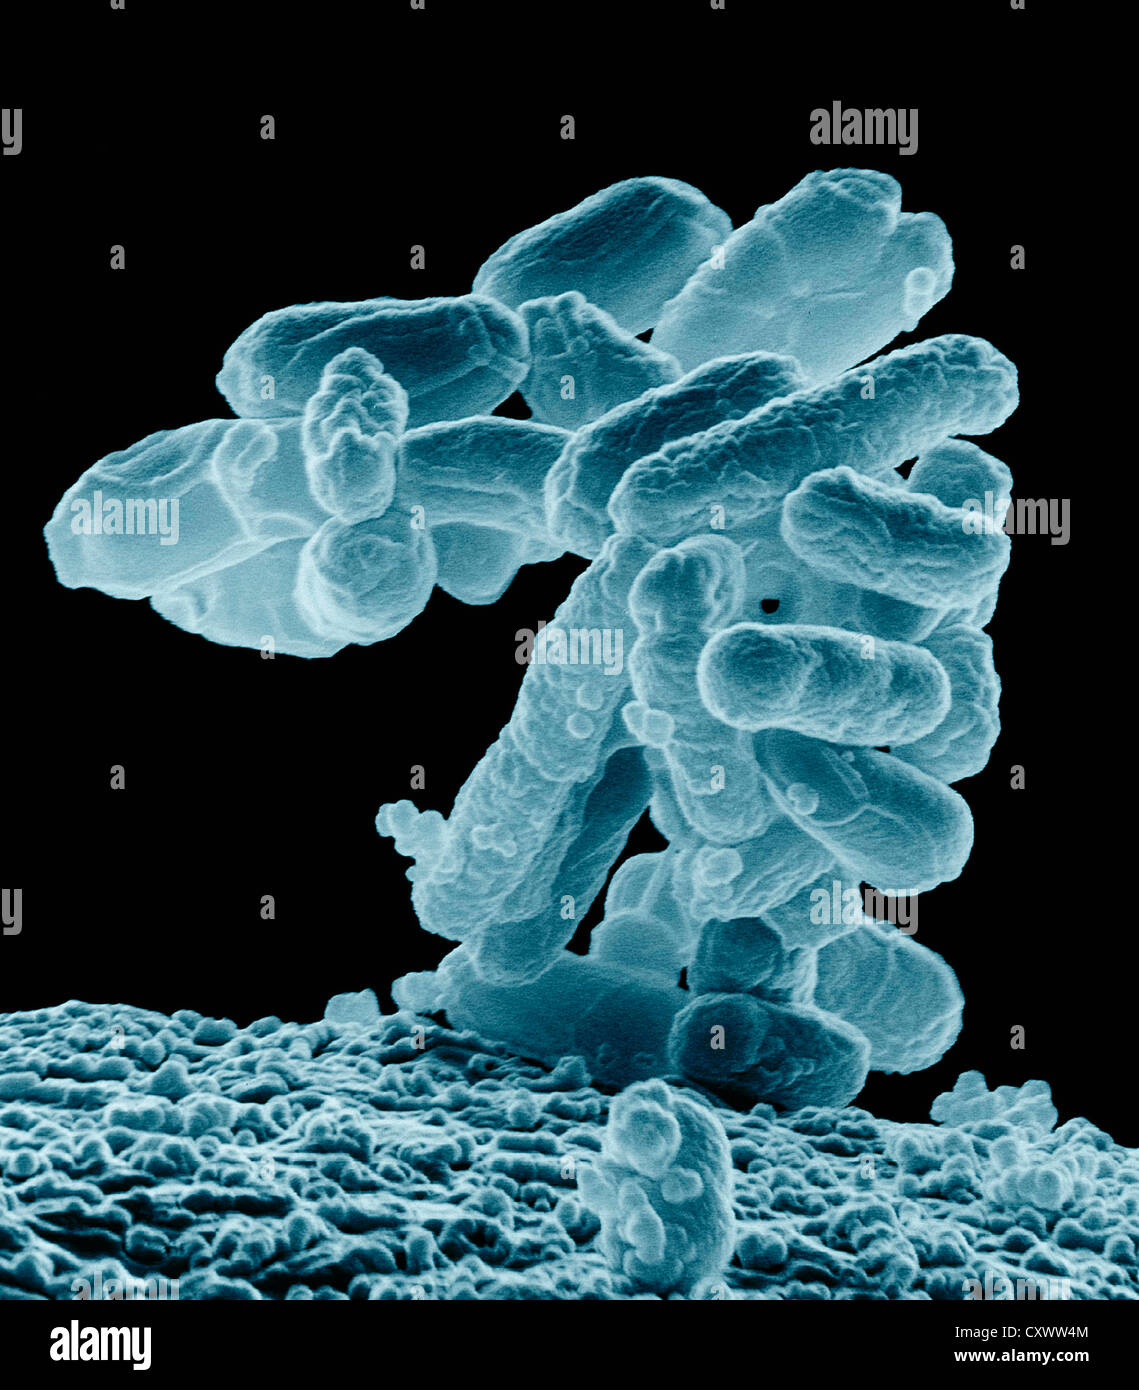 SEM aus einem Cluster von E. Coli-Bakterien Stockfoto